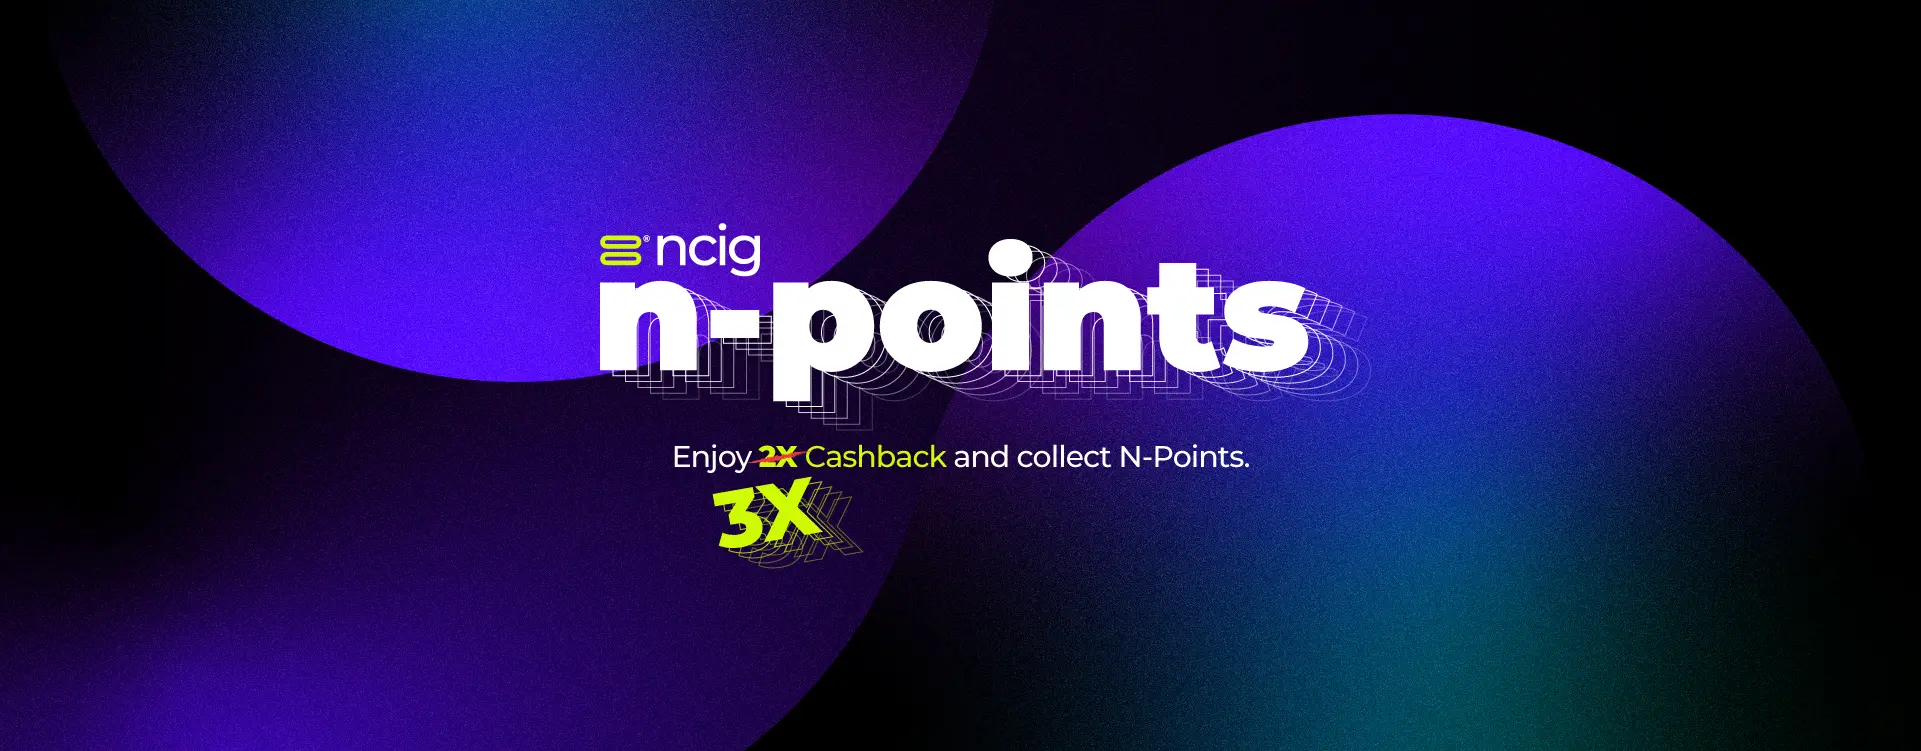 ncig™ N-Points 3x Cashback